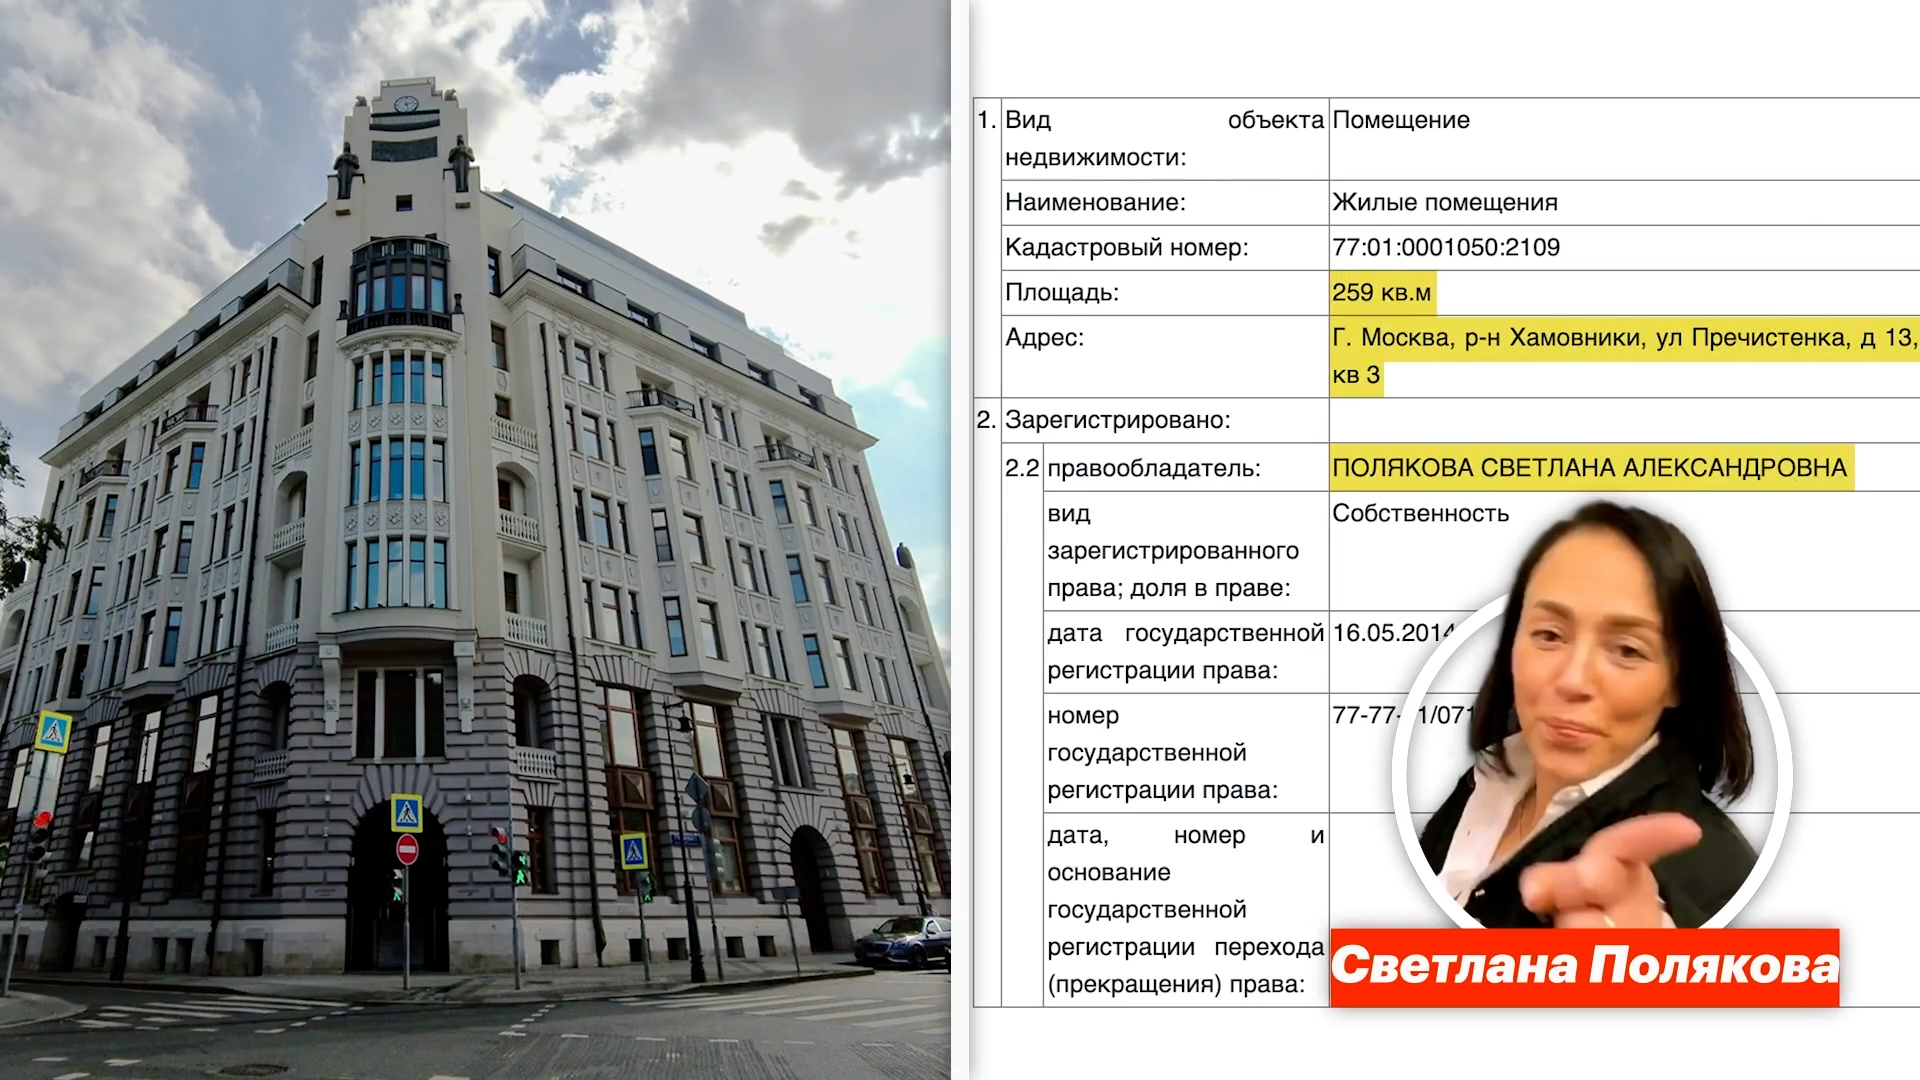 Un departamento en Moscú de 260 metros cuadrados, una de las propiedades de Svetlana Polyakova (Alexei Navalny)